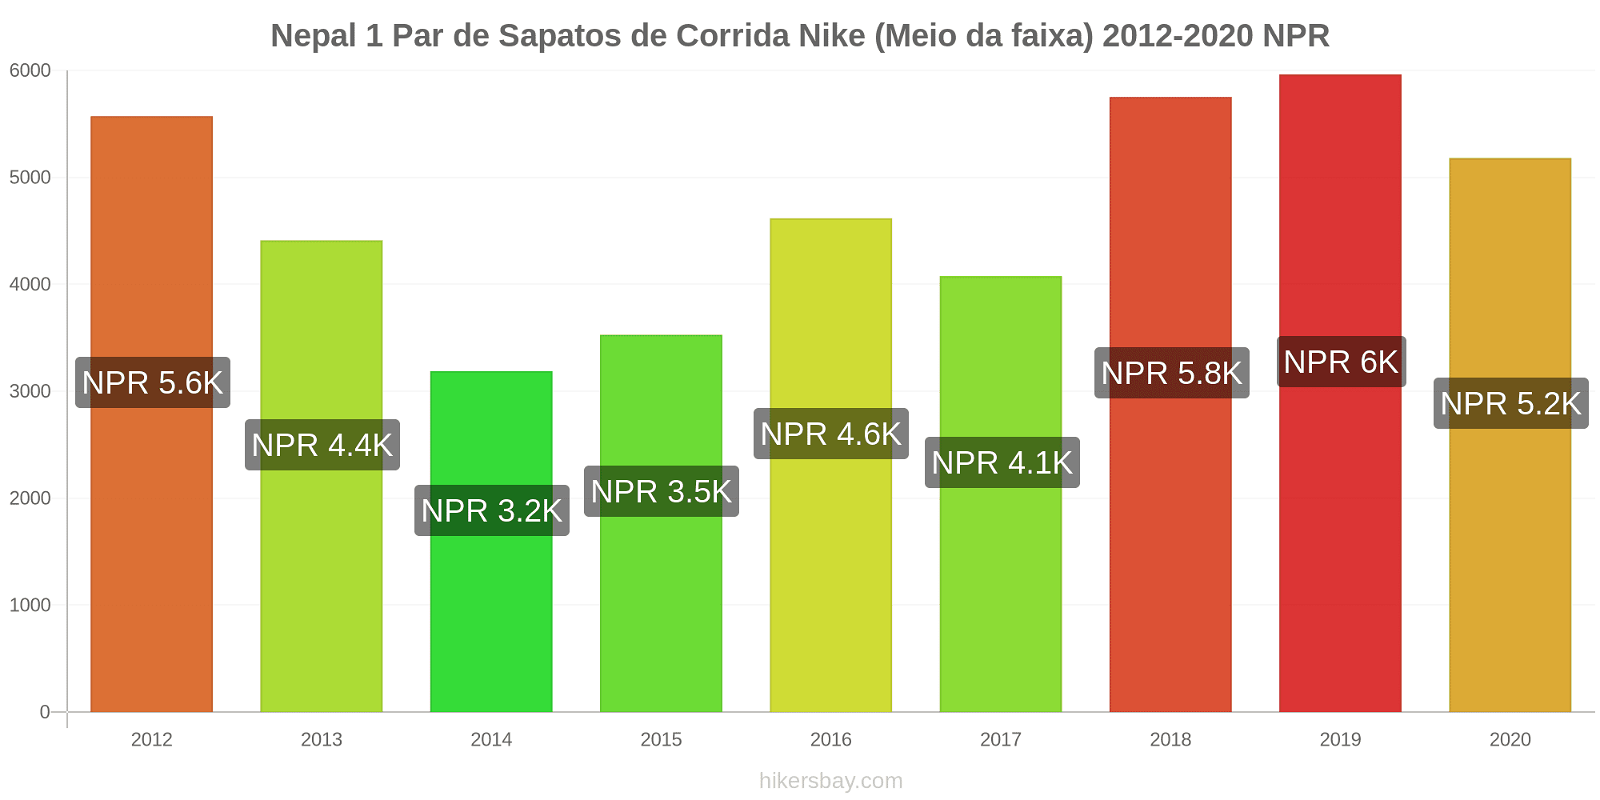 Nepal variação de preço 1 par de tênis Nike (mid-range) hikersbay.com